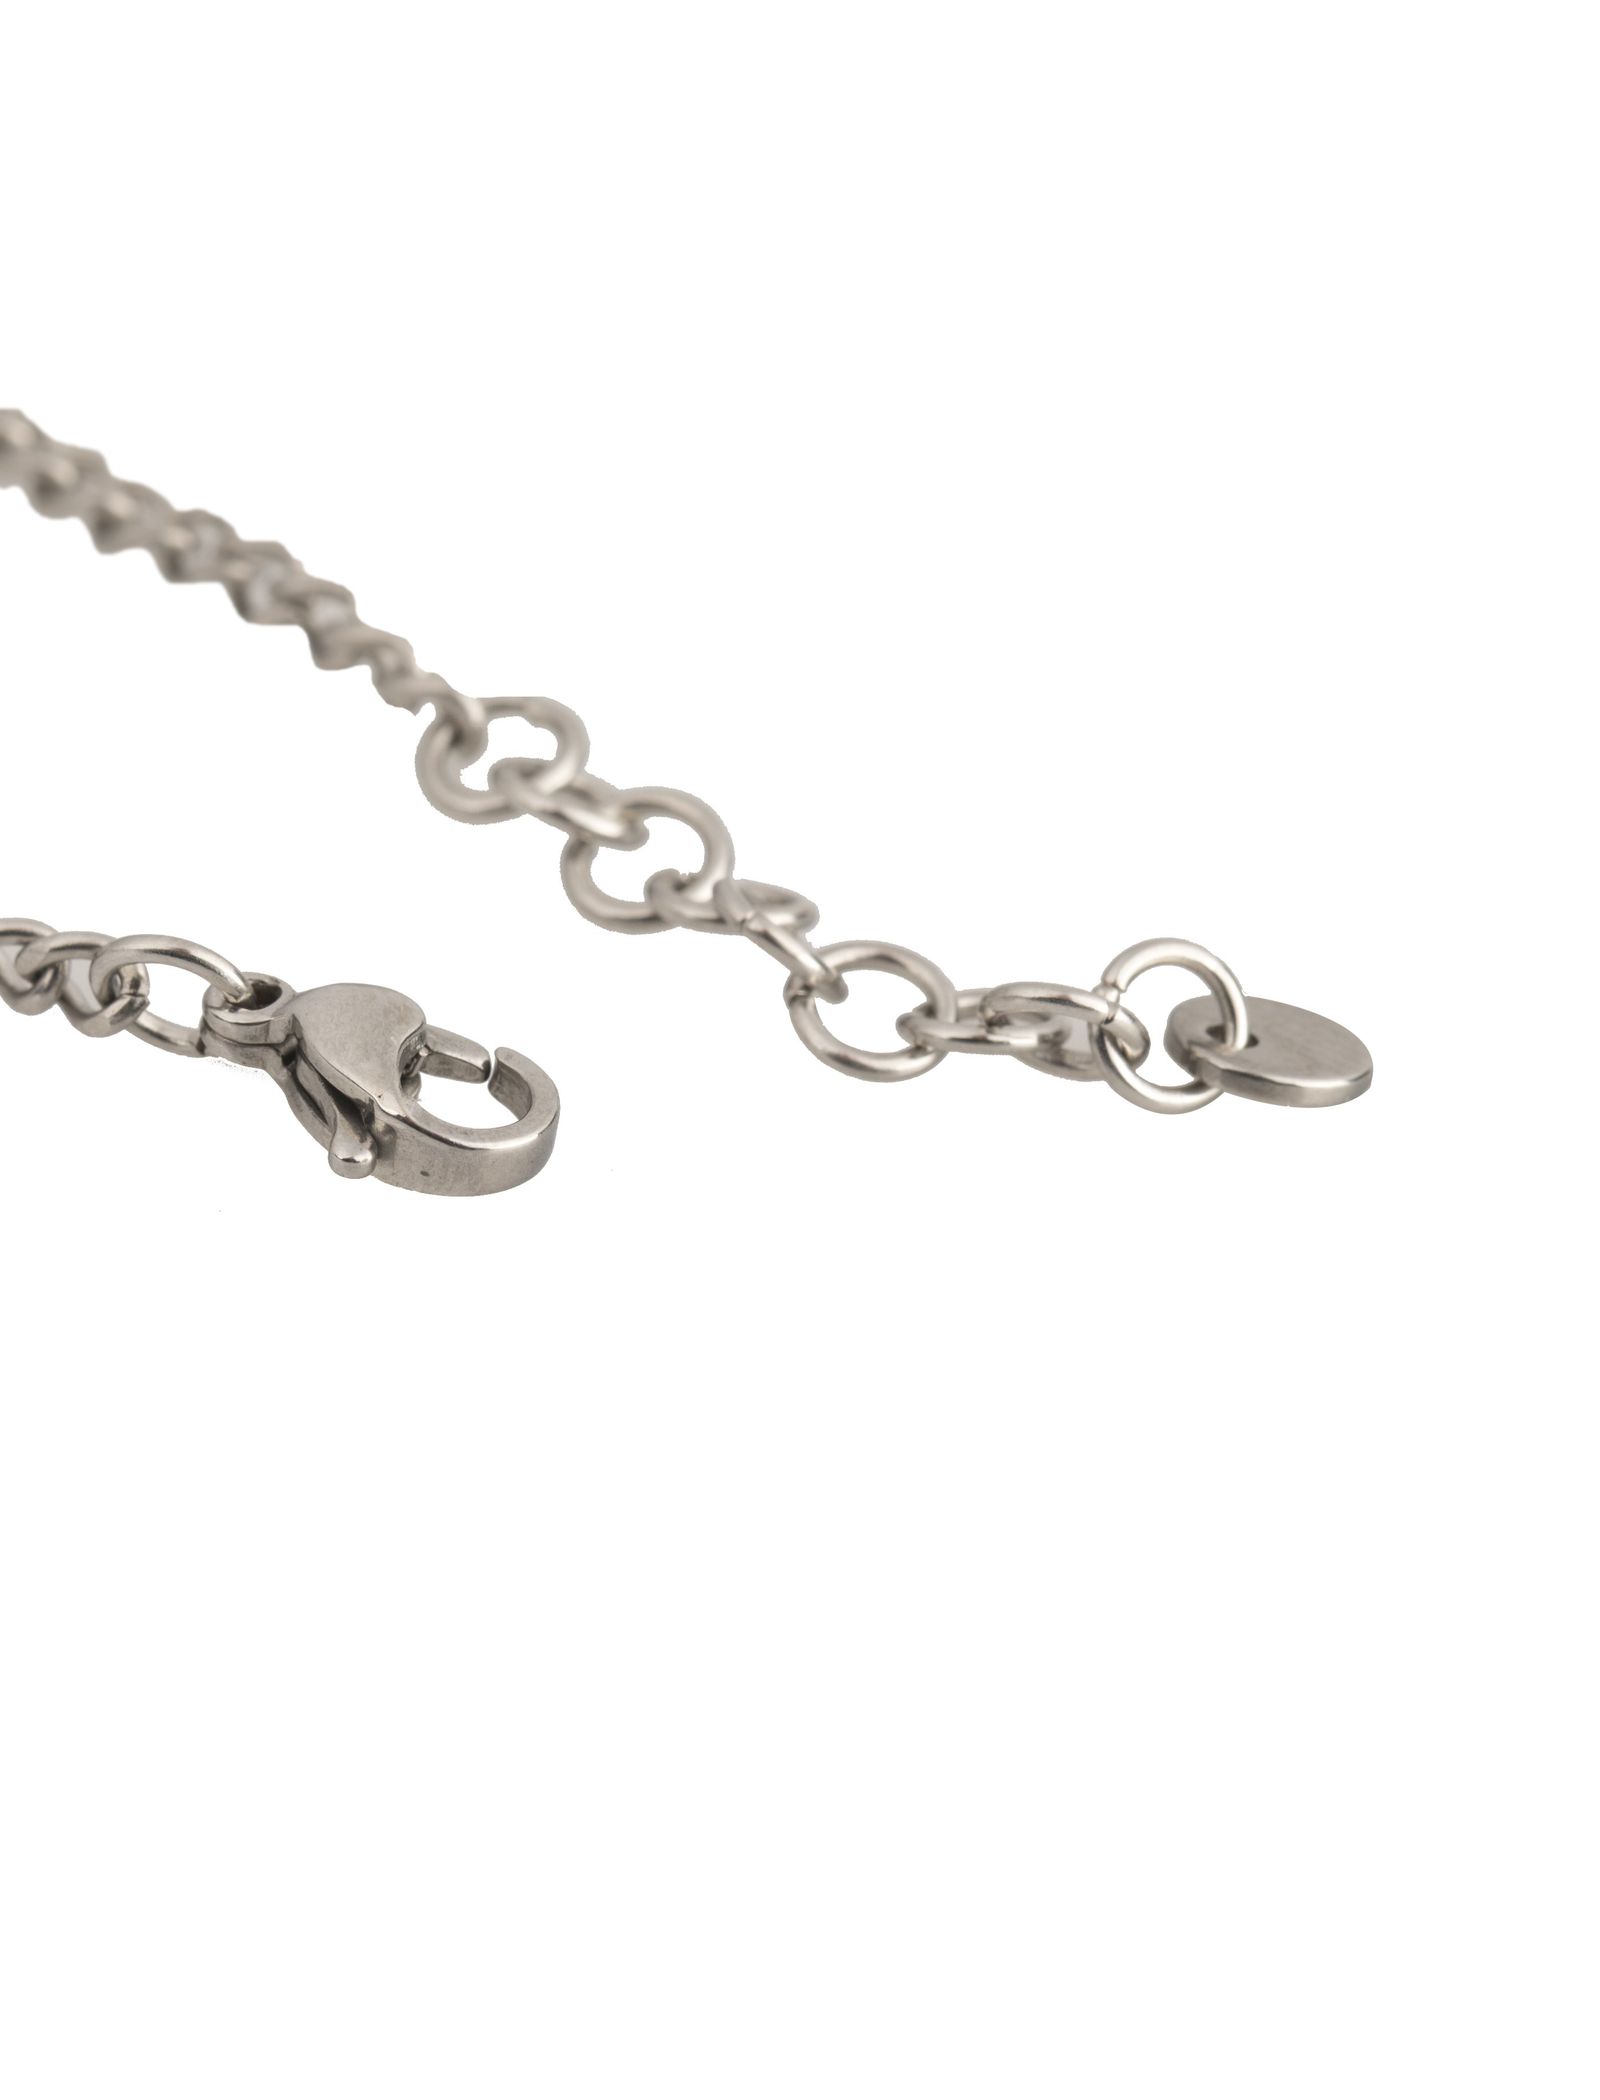 دستبند استیل زنجیری زنانه - برازوی - نقره اي  - 7